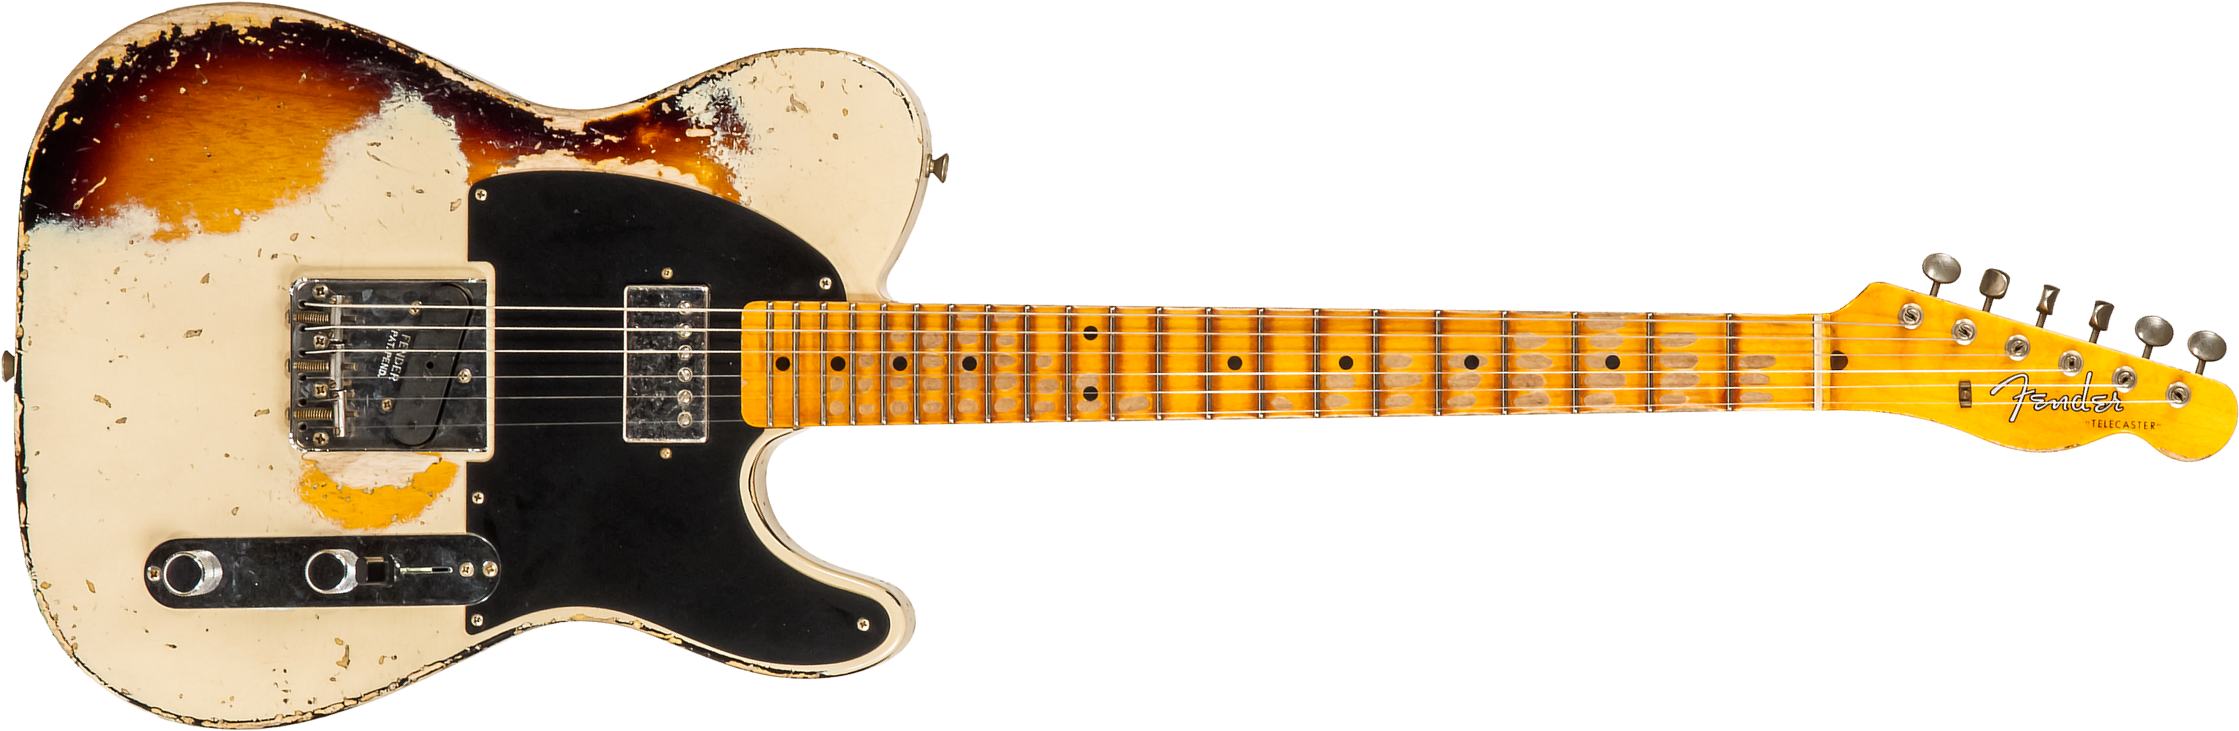 Fender Custom Shop Tele 1957 Sh Ht Mn #r117579 - Heavy Relic Desert Sand Ov. Sunburst - E-Gitarre in Teleform - Main picture